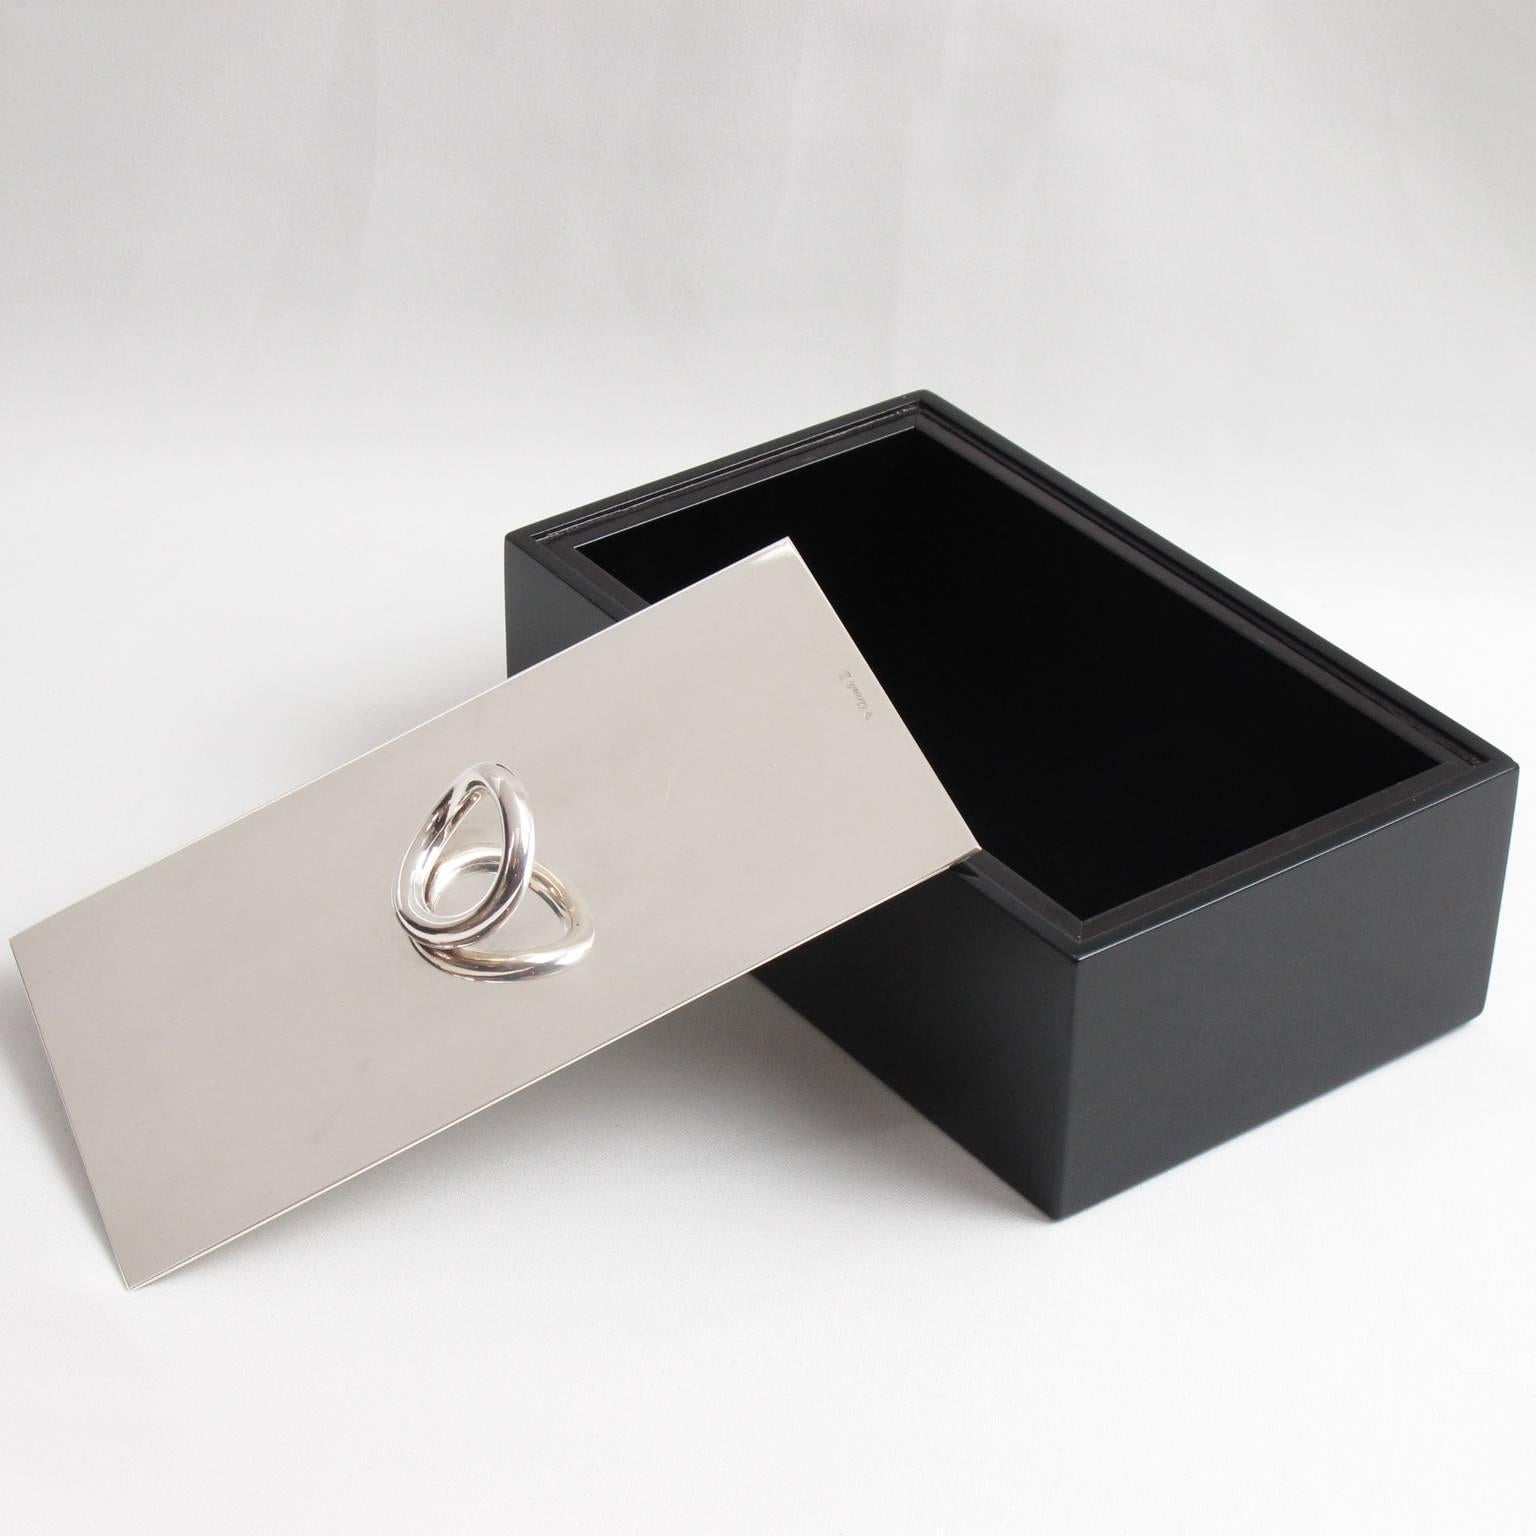 Modern Silver Plate and Lacquer Vertigo Box Designed by Andrée Putman for Christofle